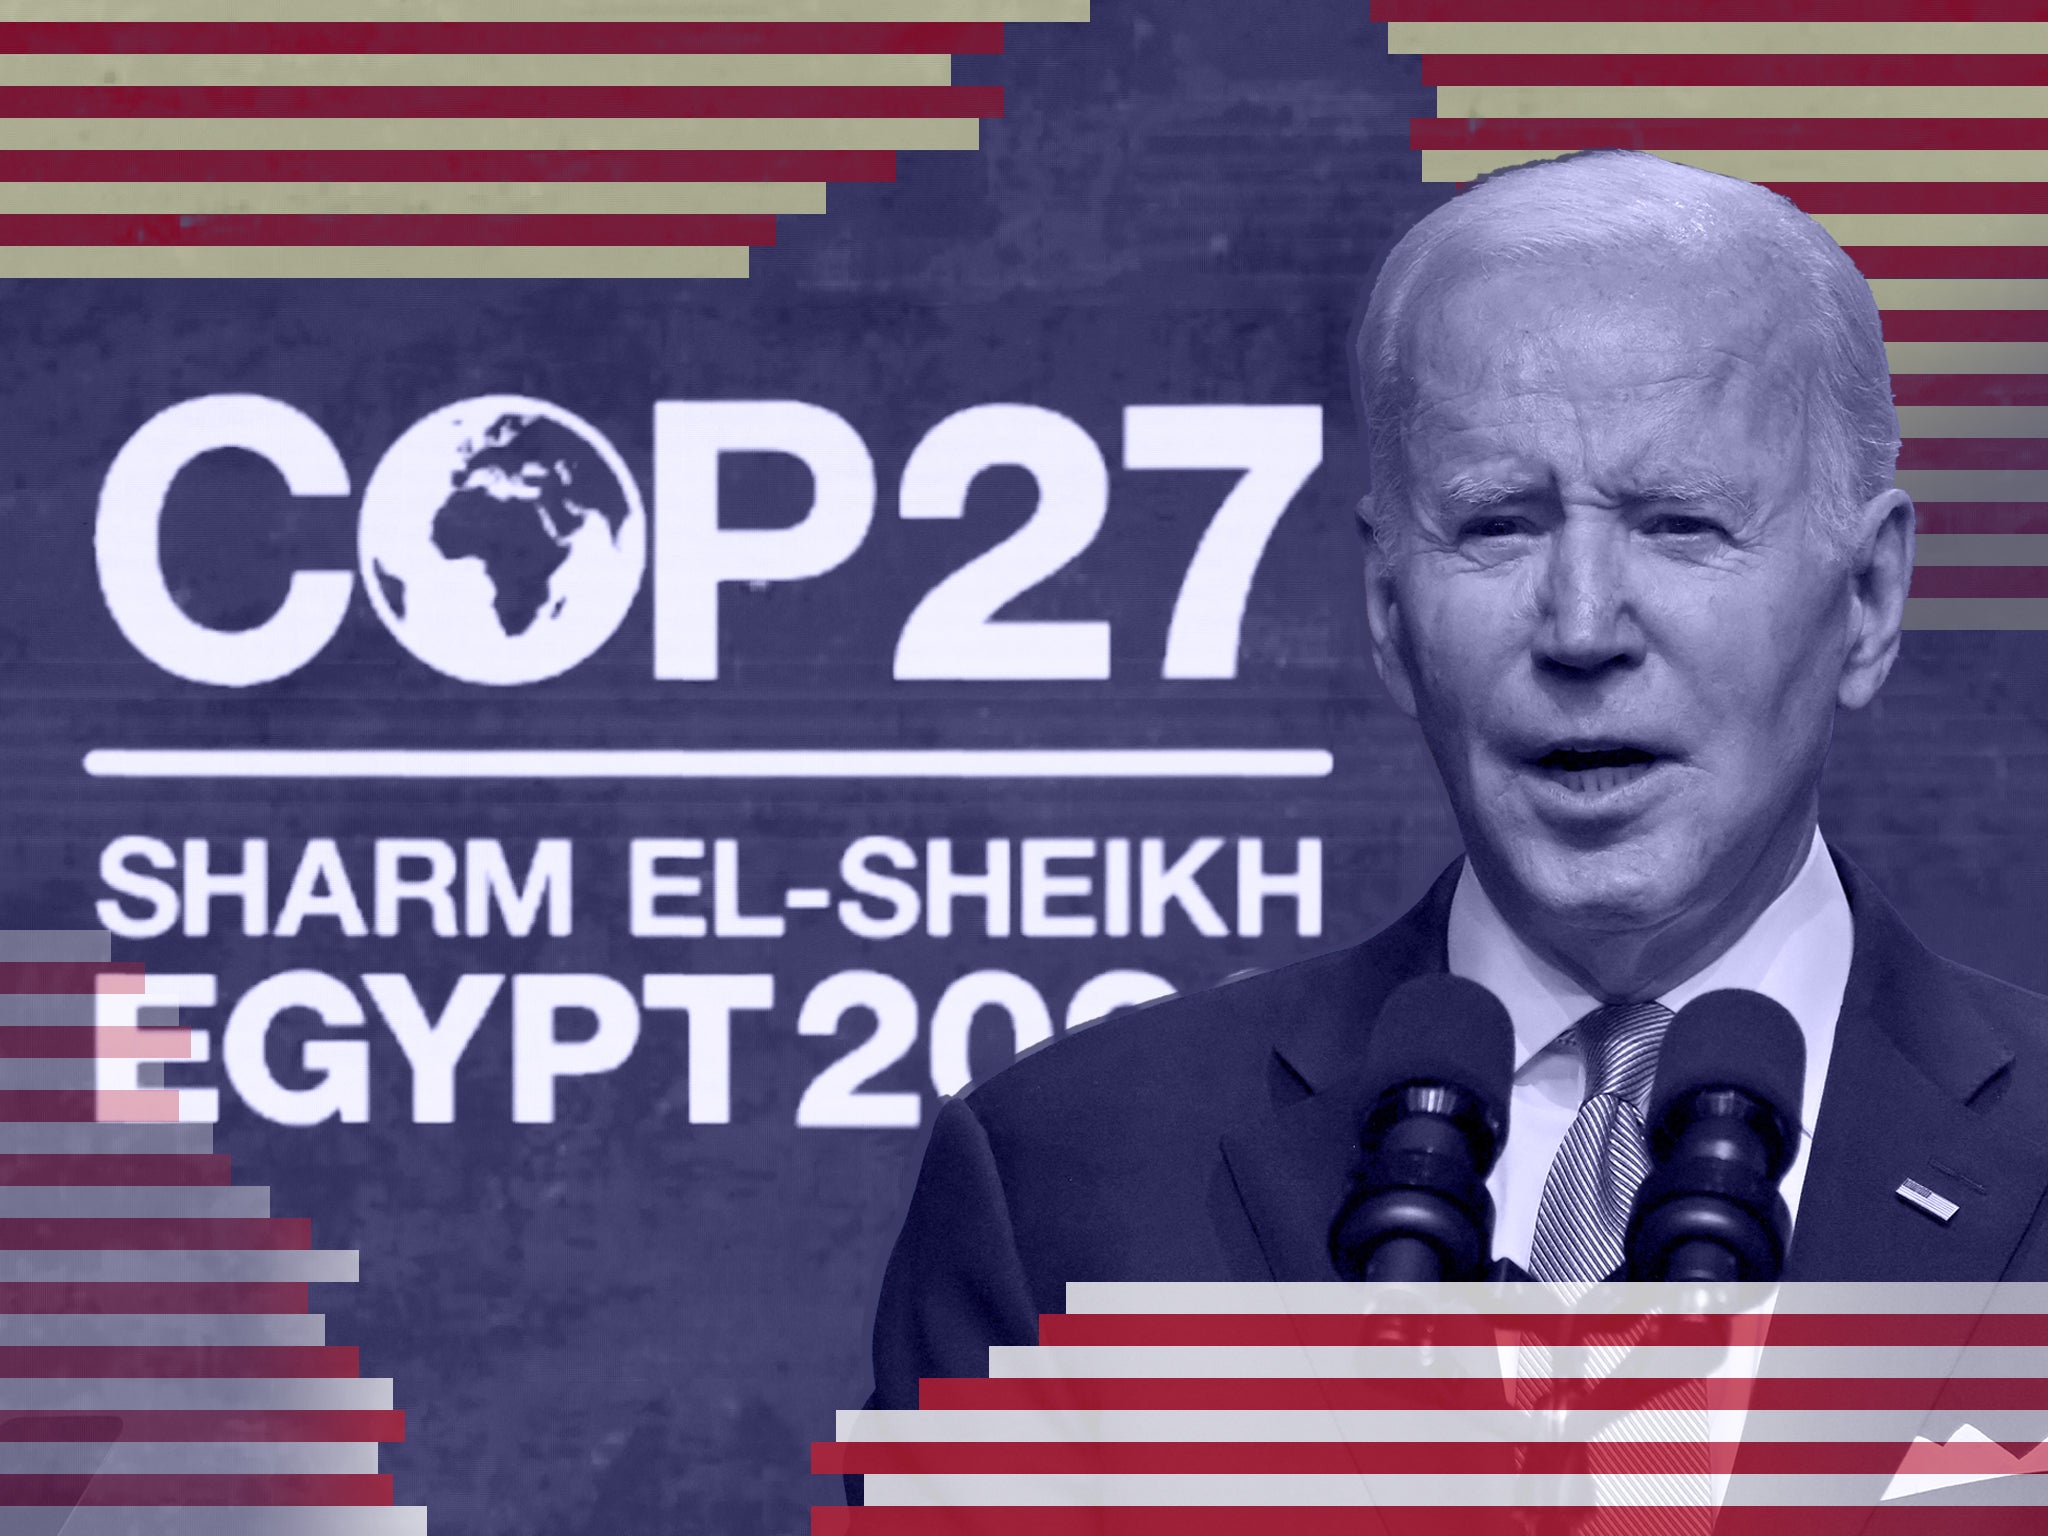 President Joe Biden speaking at the Cop27 climate summit in Sharm el-Sheikh, Egypt